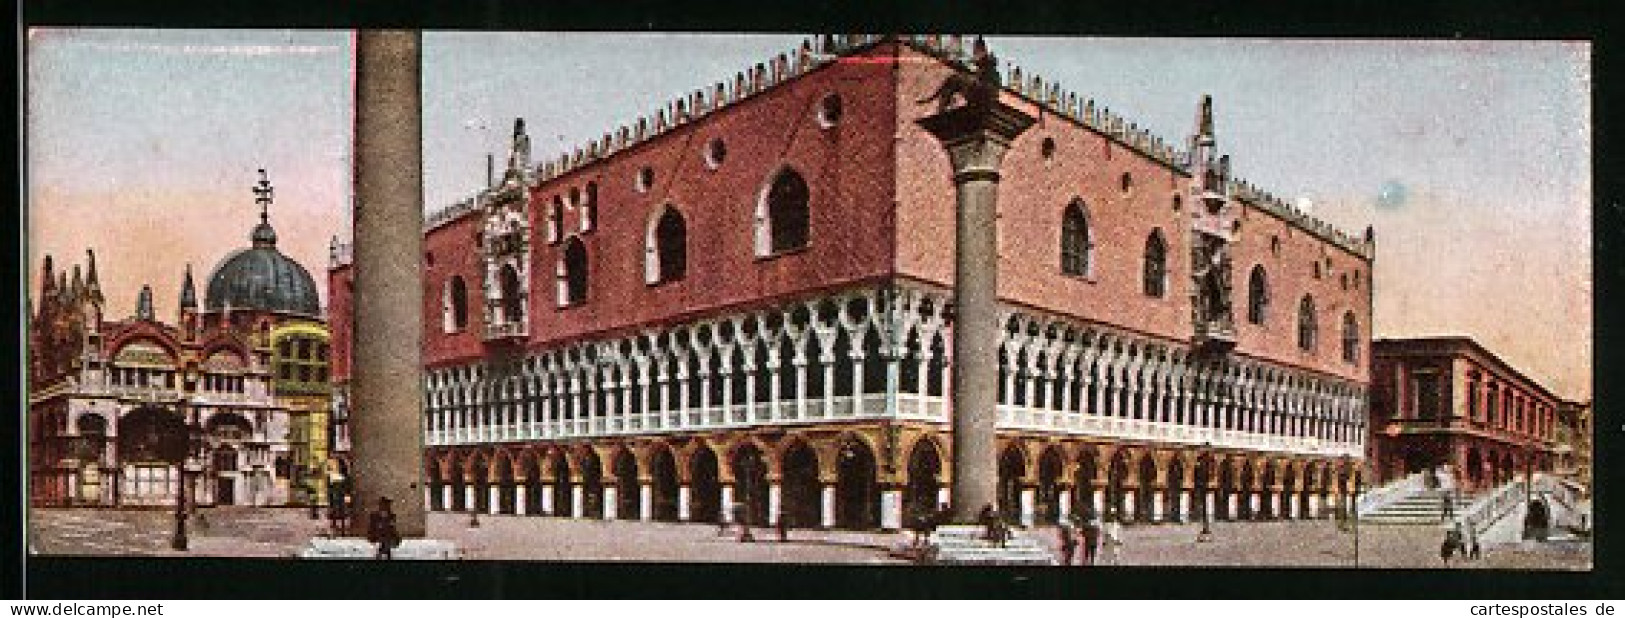 Mini-Cartolina Venezia, Palazzo Ducale  - Venezia (Venedig)